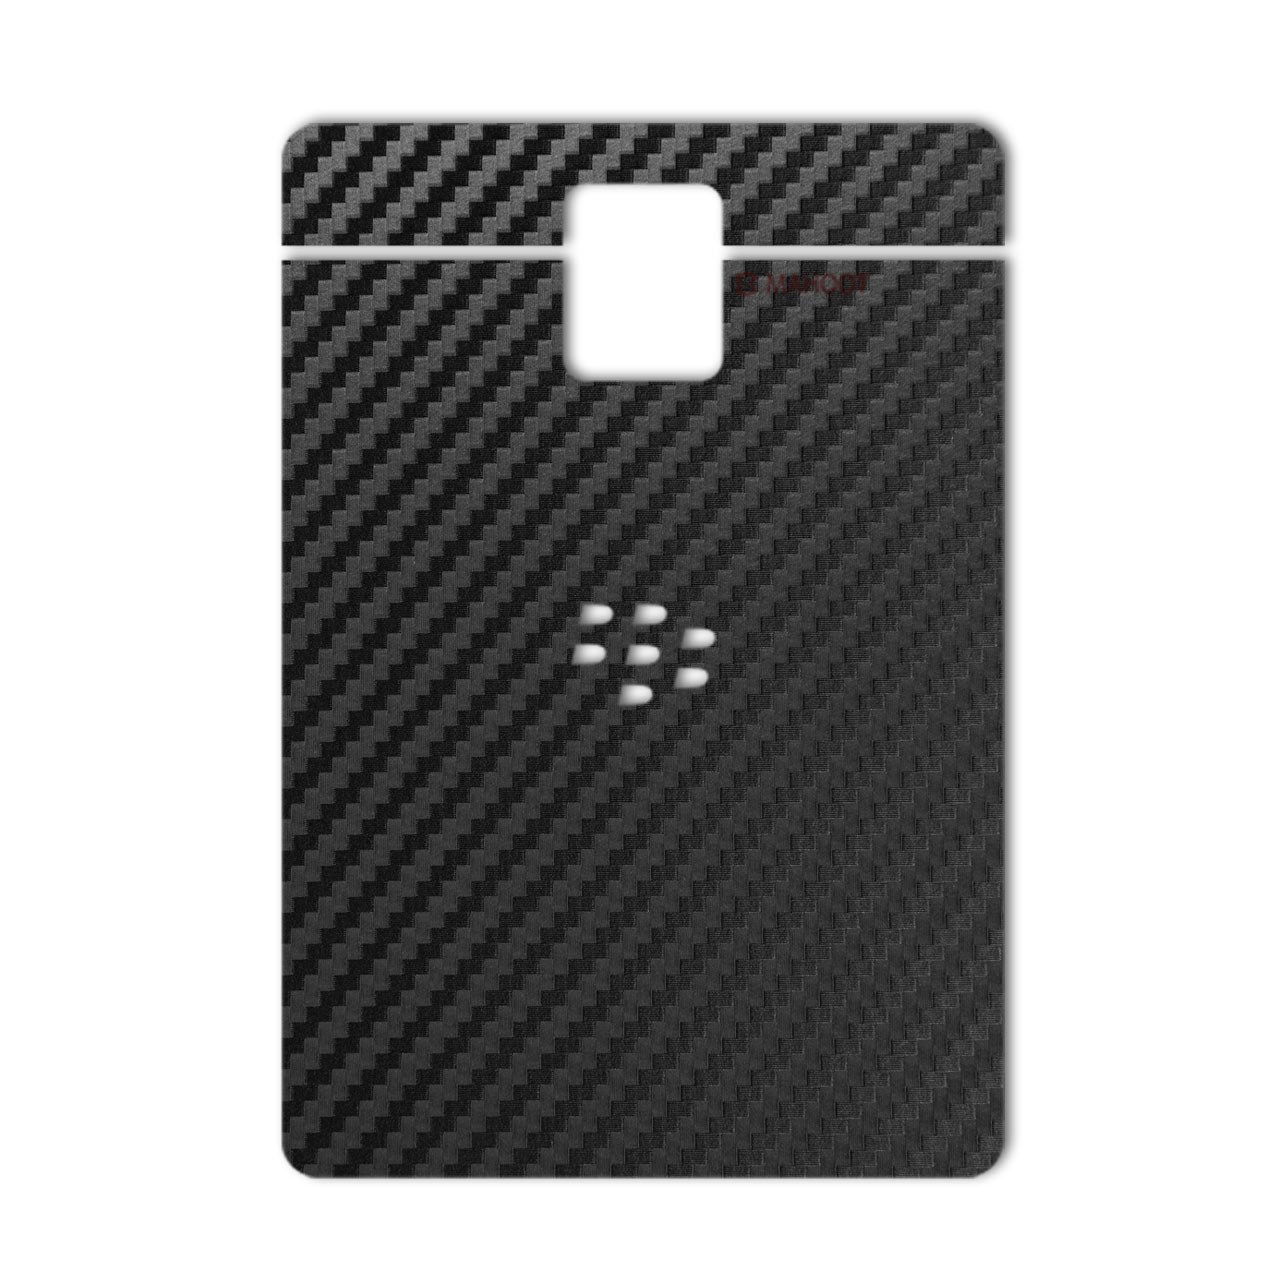 نقد و بررسی برچسب پوششی ماهوت مدل Carbon-fiber Texture مناسب برای گوشی BlackBerry Passpor توسط خریداران